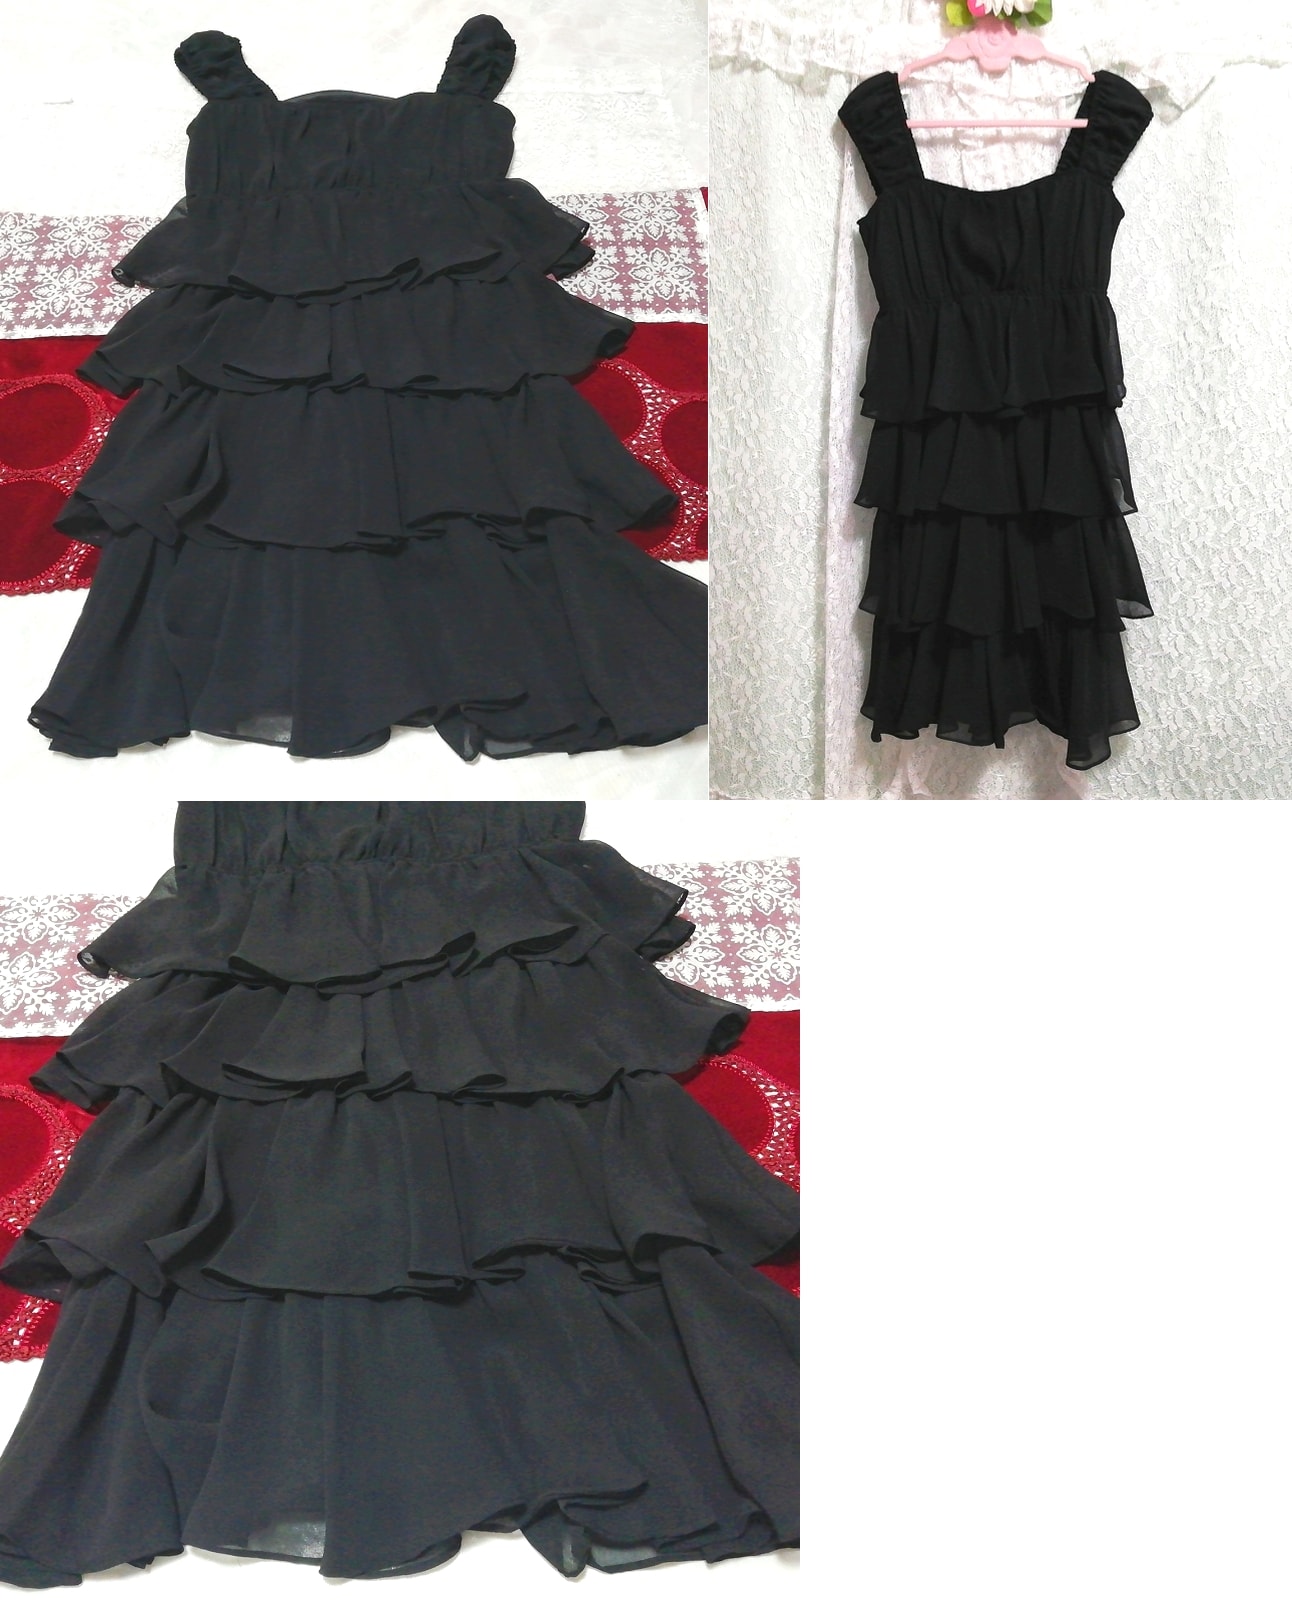 Черное шифоновое полуплатье без рукавов из шифона и пеньюара с оборками, юбка длиной до колена, размер м